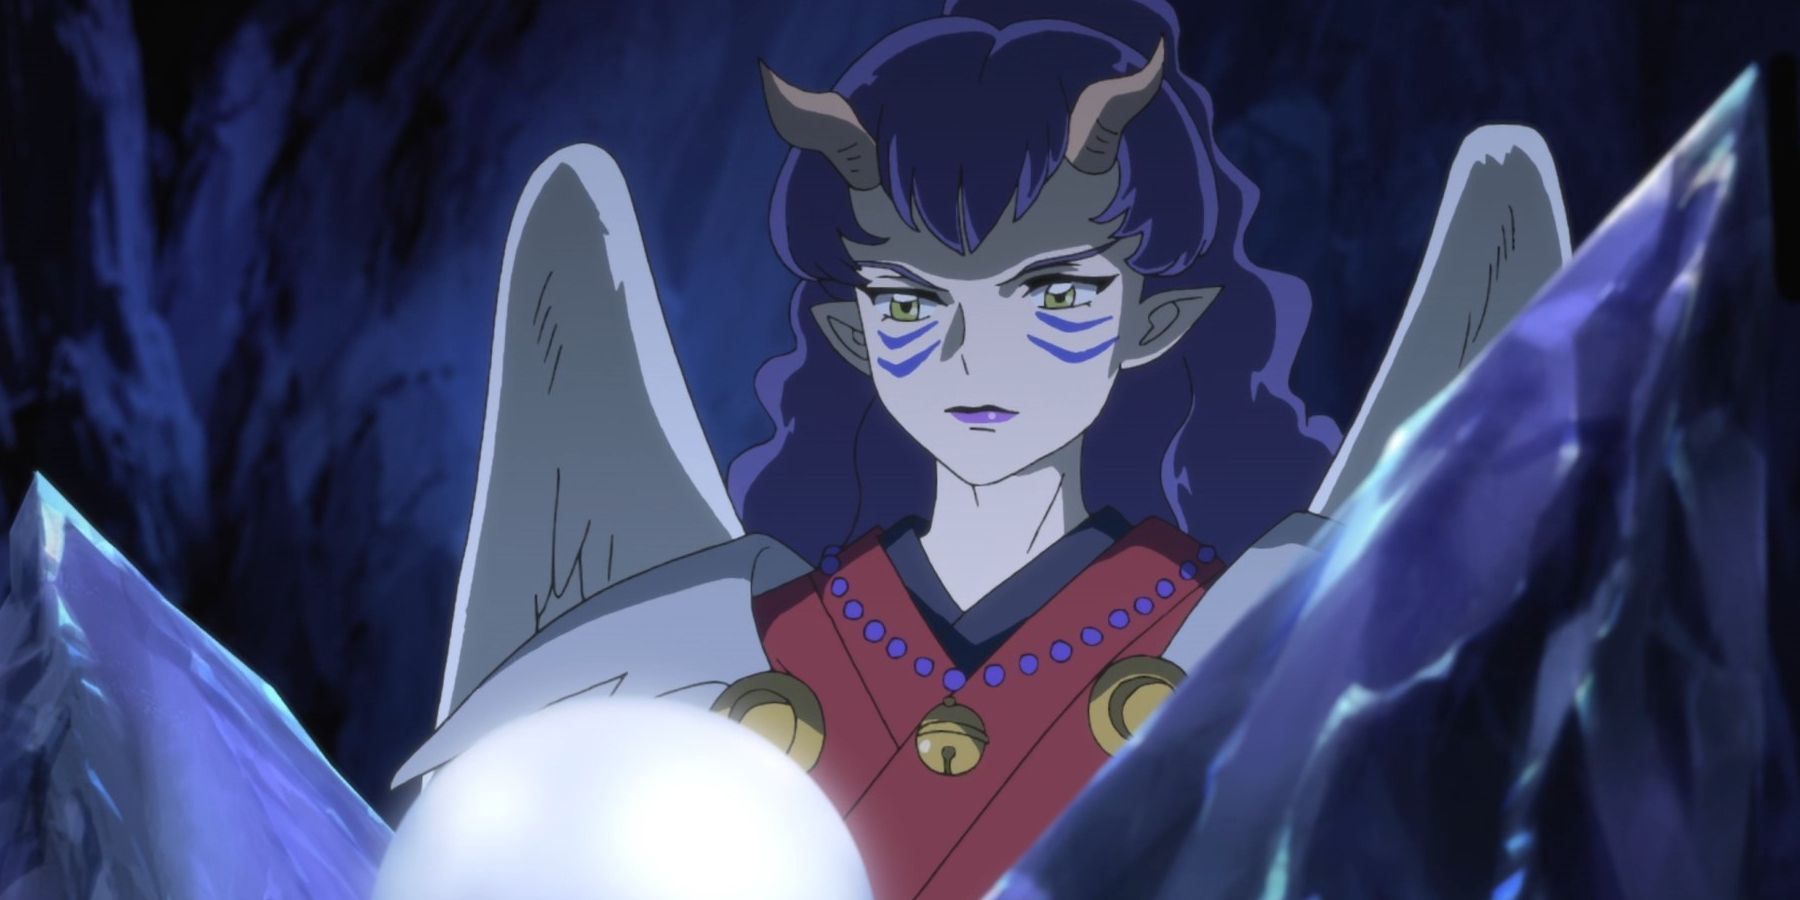 Yashahime: Princess Half-Demon and the Power of the Pearls